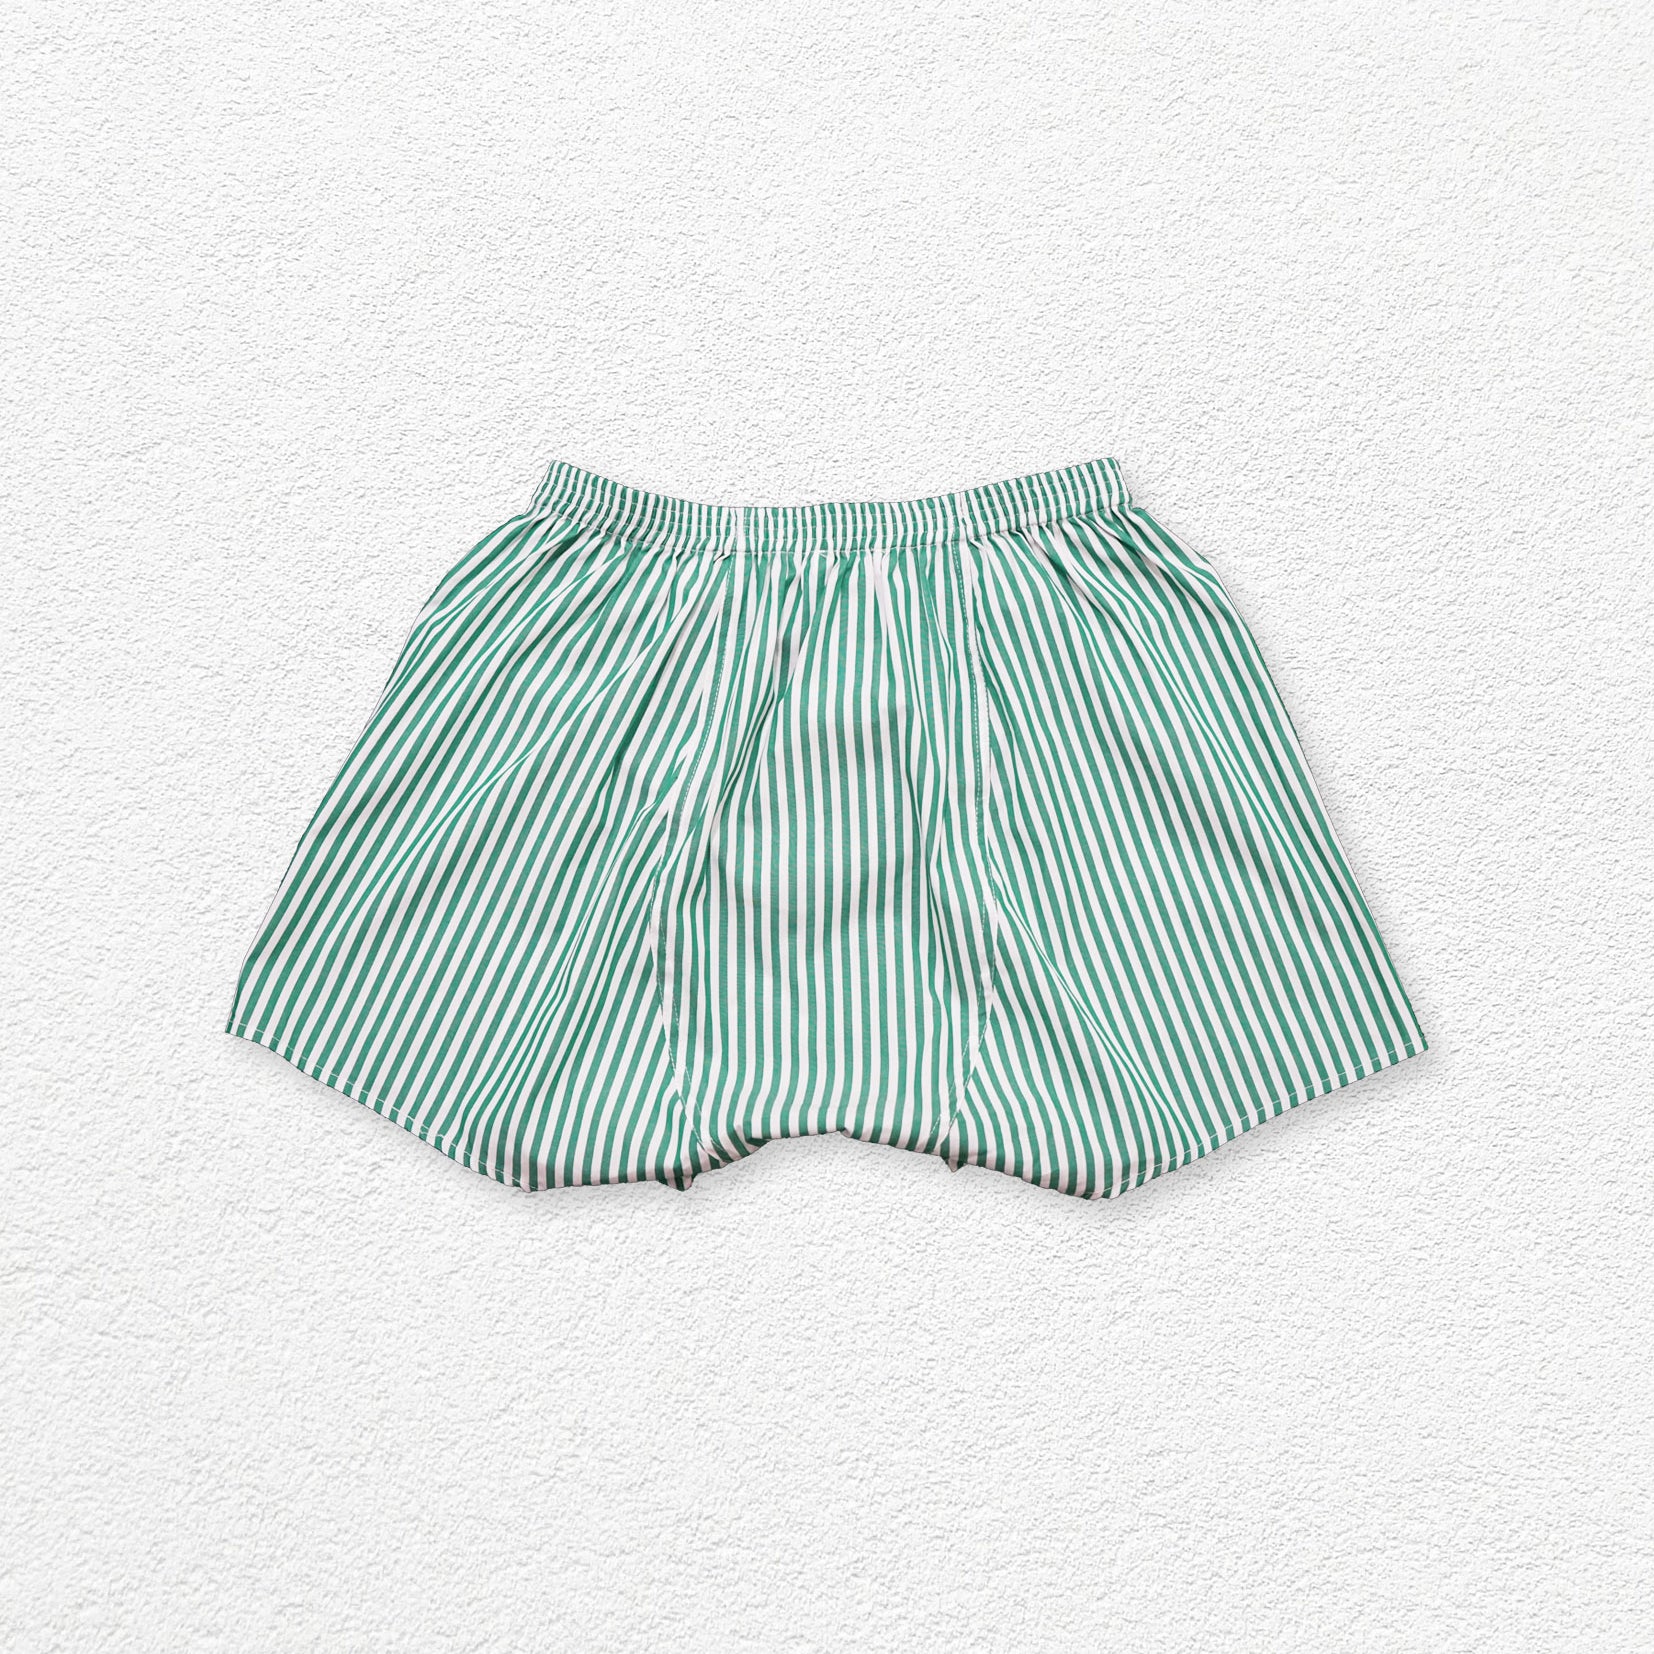 Unisex striped boxer shorts underwear - green